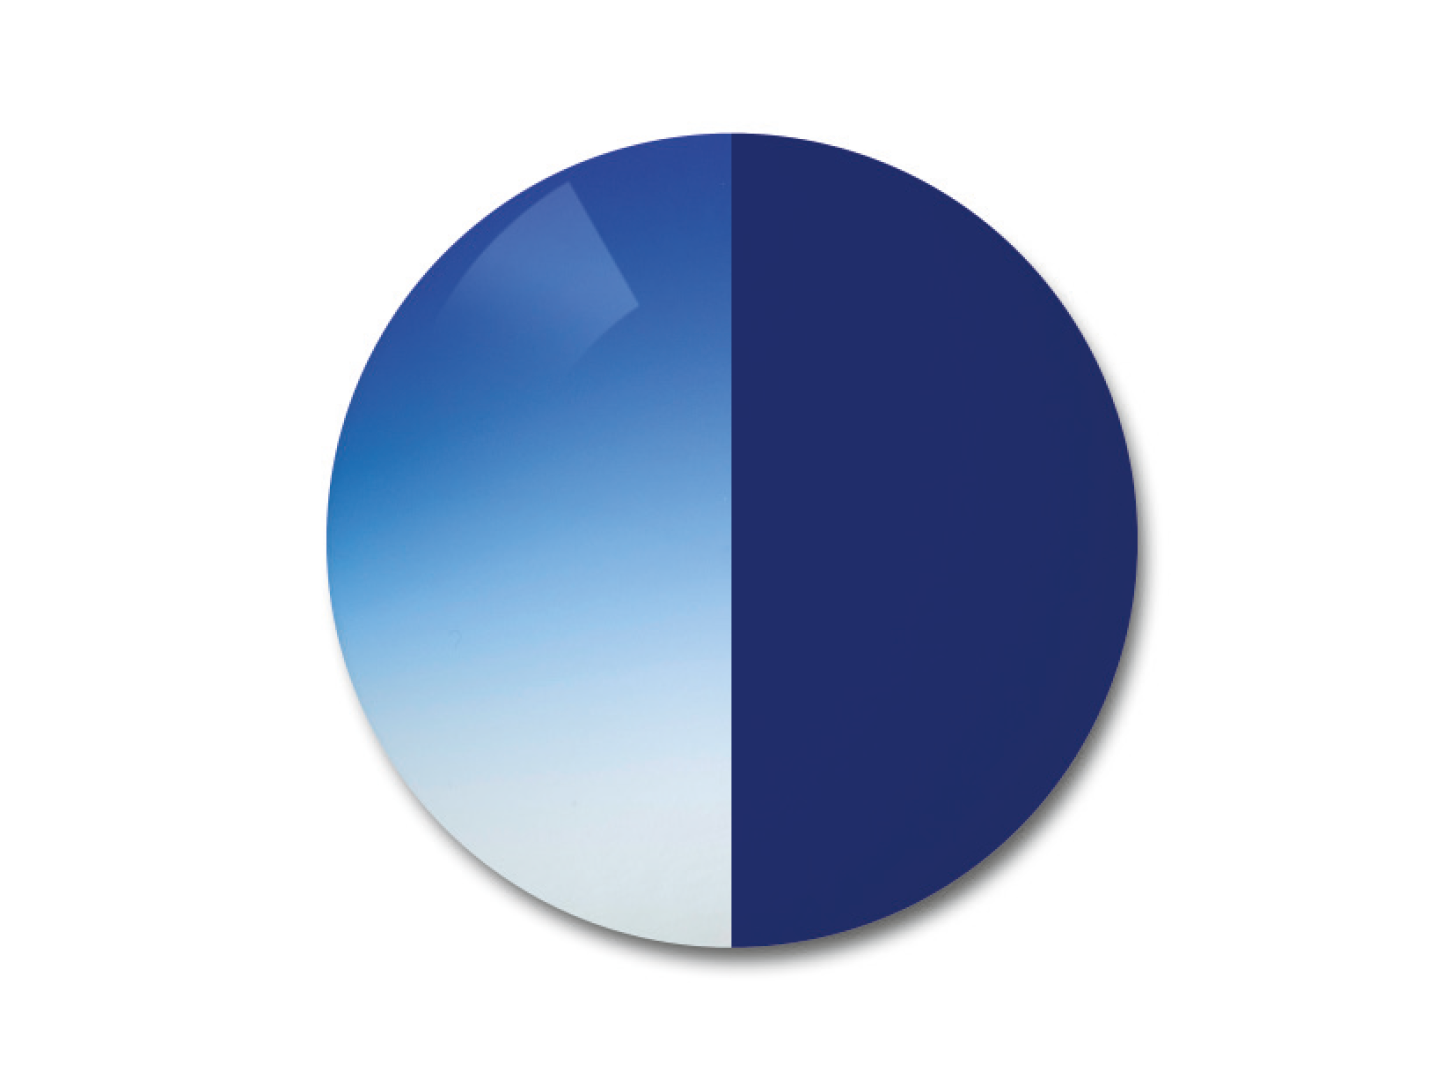 자이스 어댑티브선 변색 렌즈 중 그라데이션 블루 컬러를 보여주는 이미지 